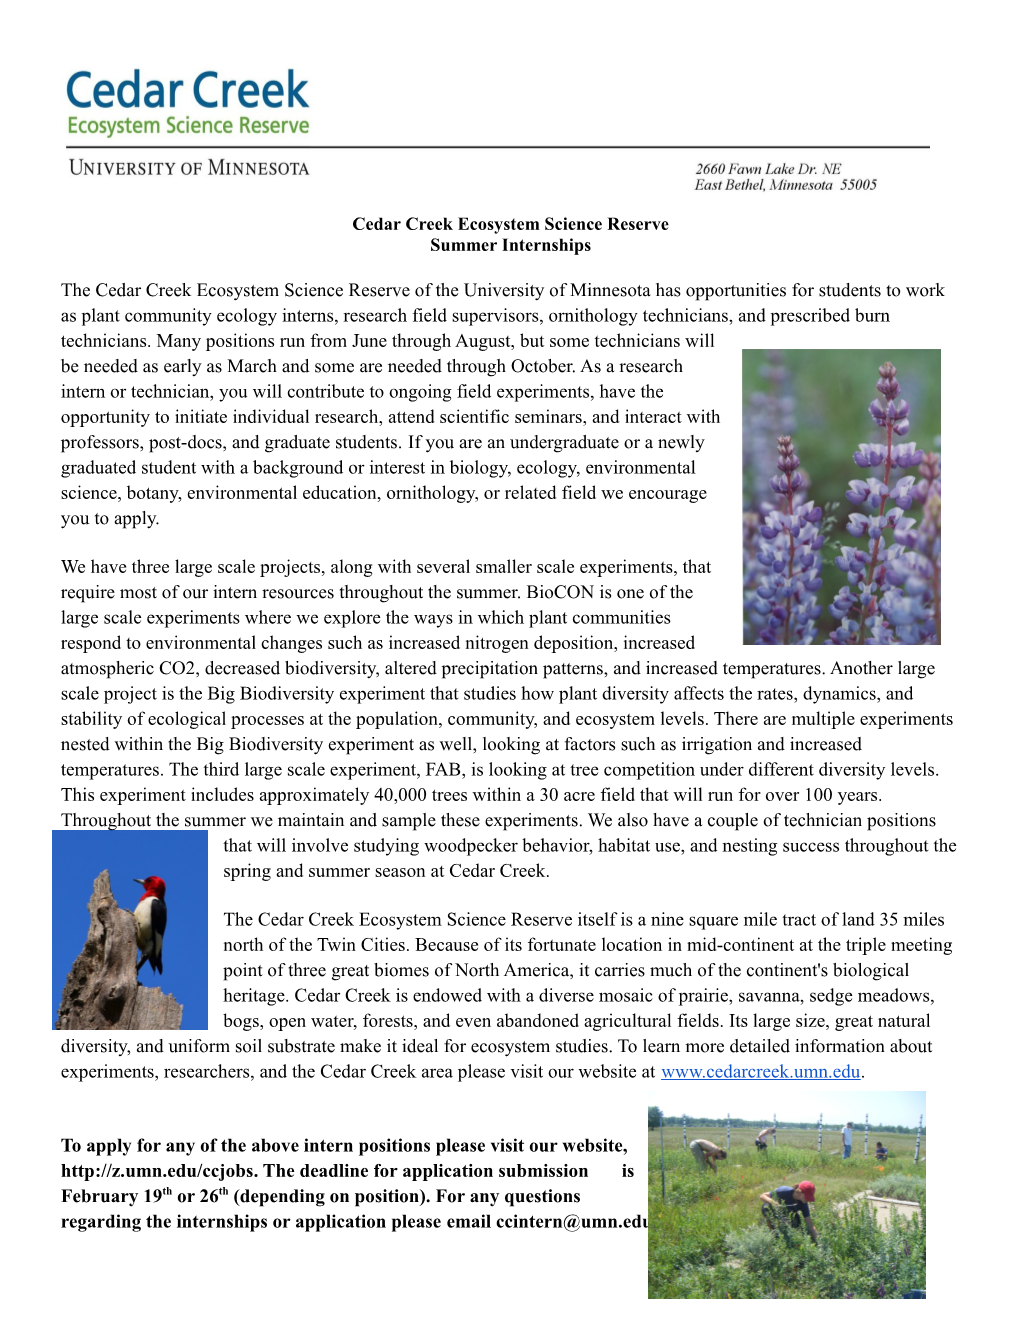 Cedar Creek Ecosystem Science Reserve